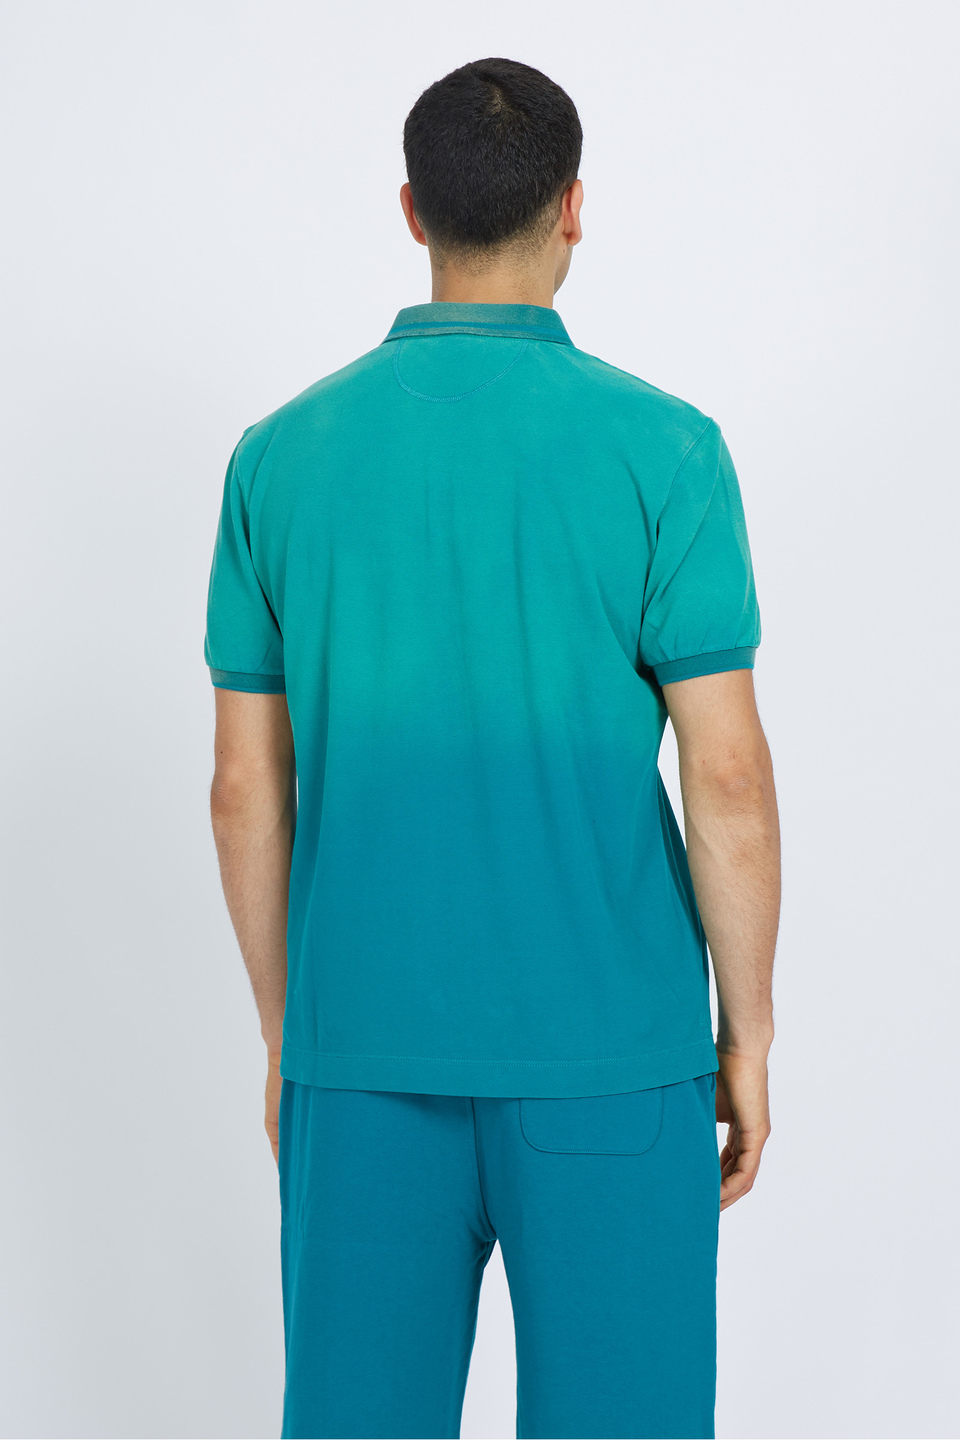 Regular fit 100% cotton short-sleeved polo shirt for men - Vilko | La Martina - Official Online Shop